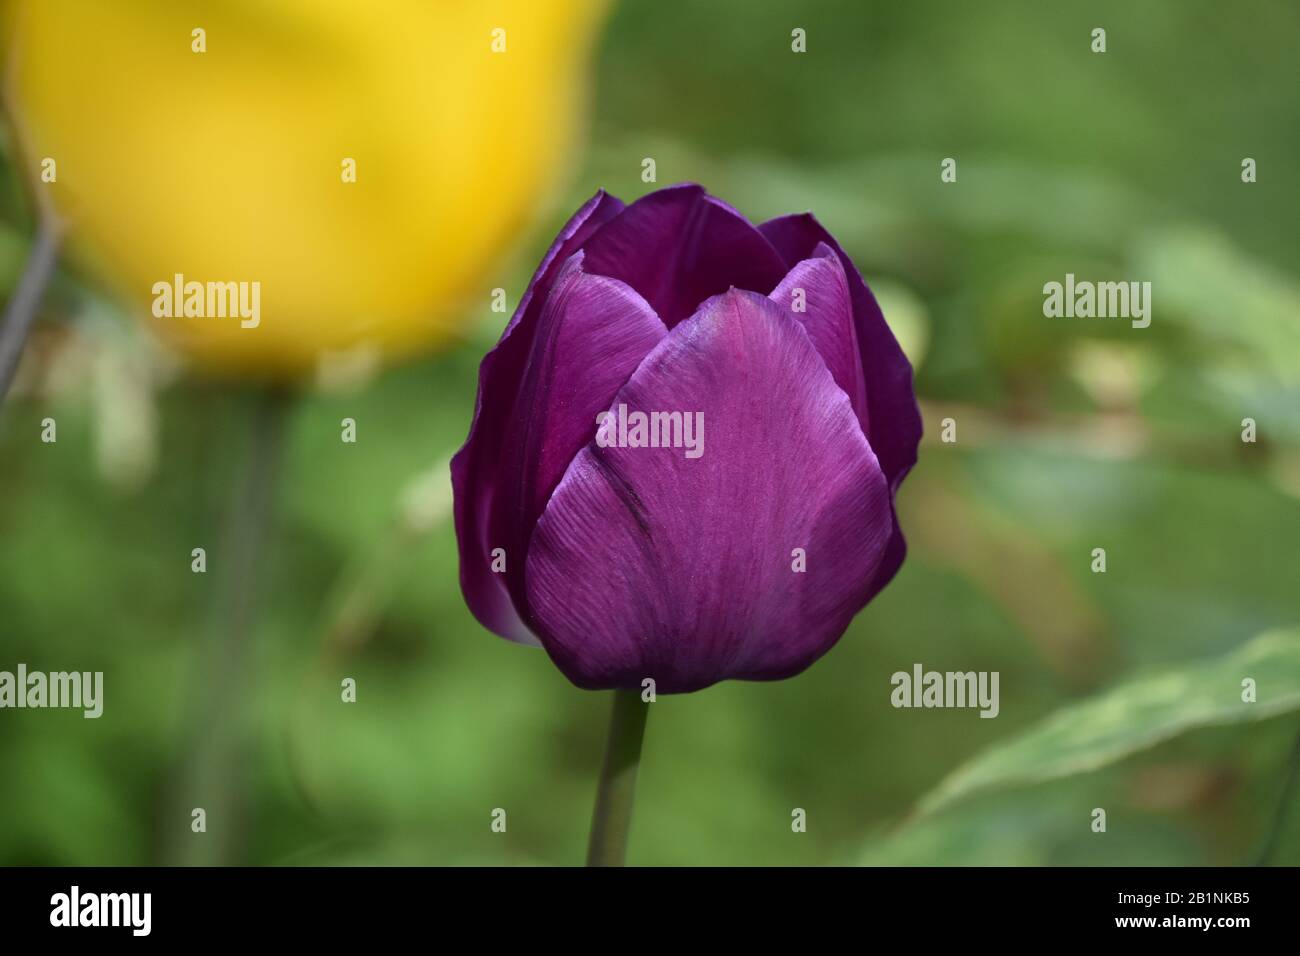 Au printemps tulipe violette Banque D'Images